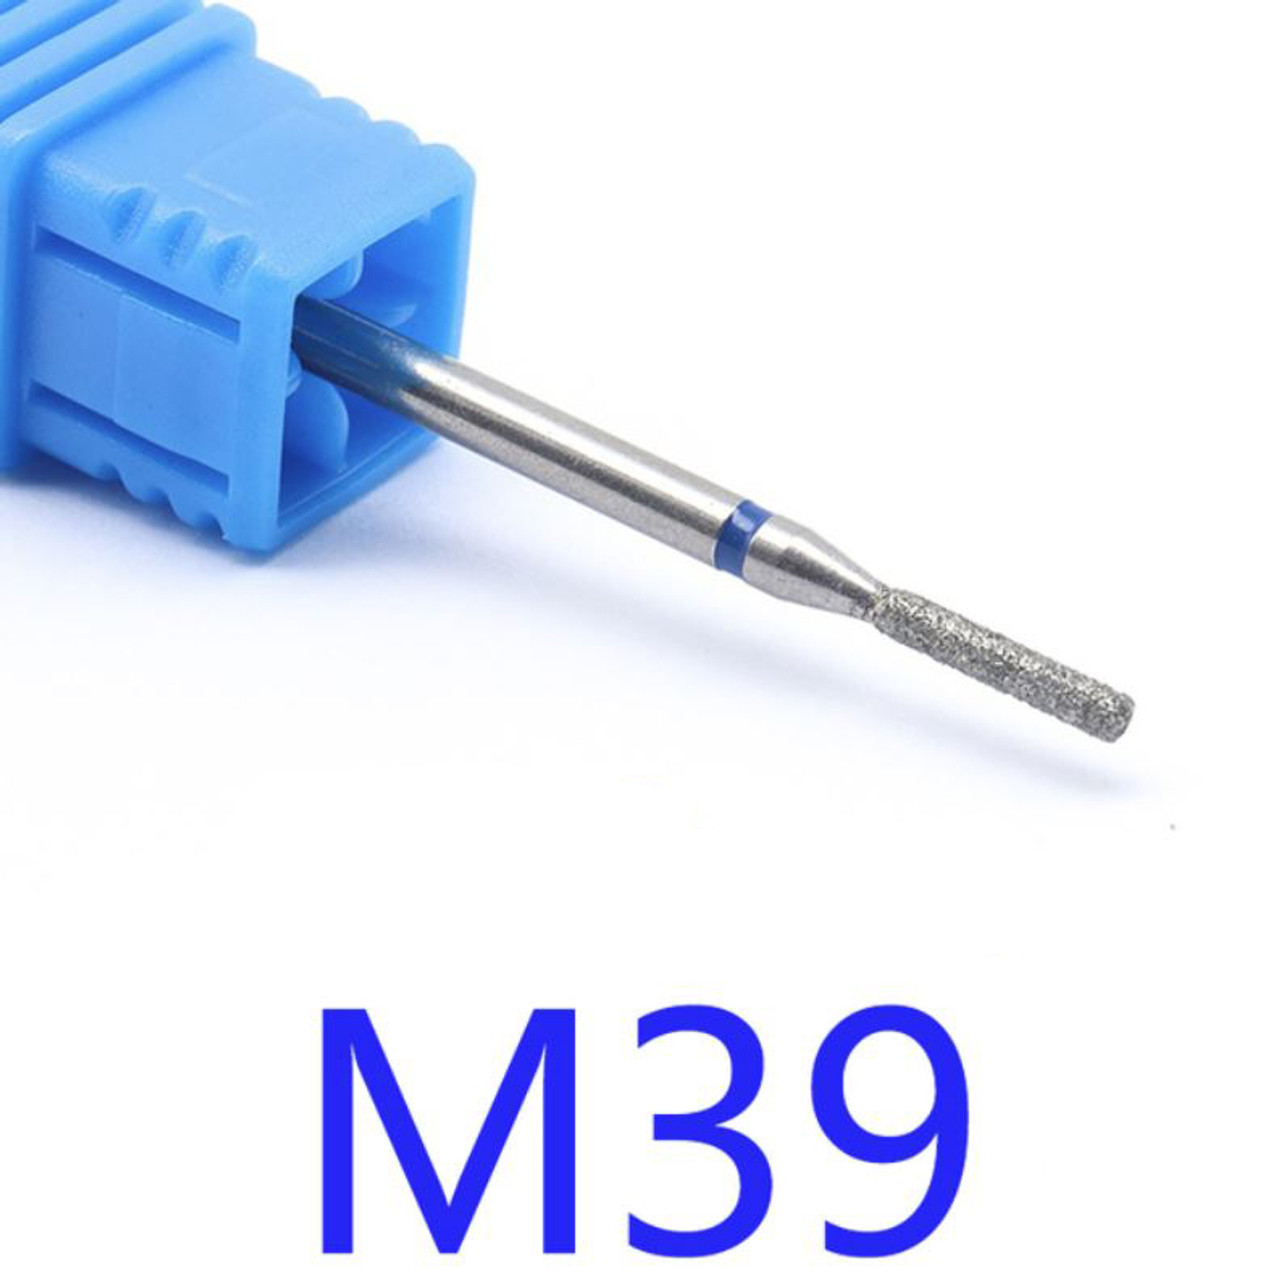 NDi beauty Diamond Drill Bit - 3/32 shank (MEDIUM) - M39